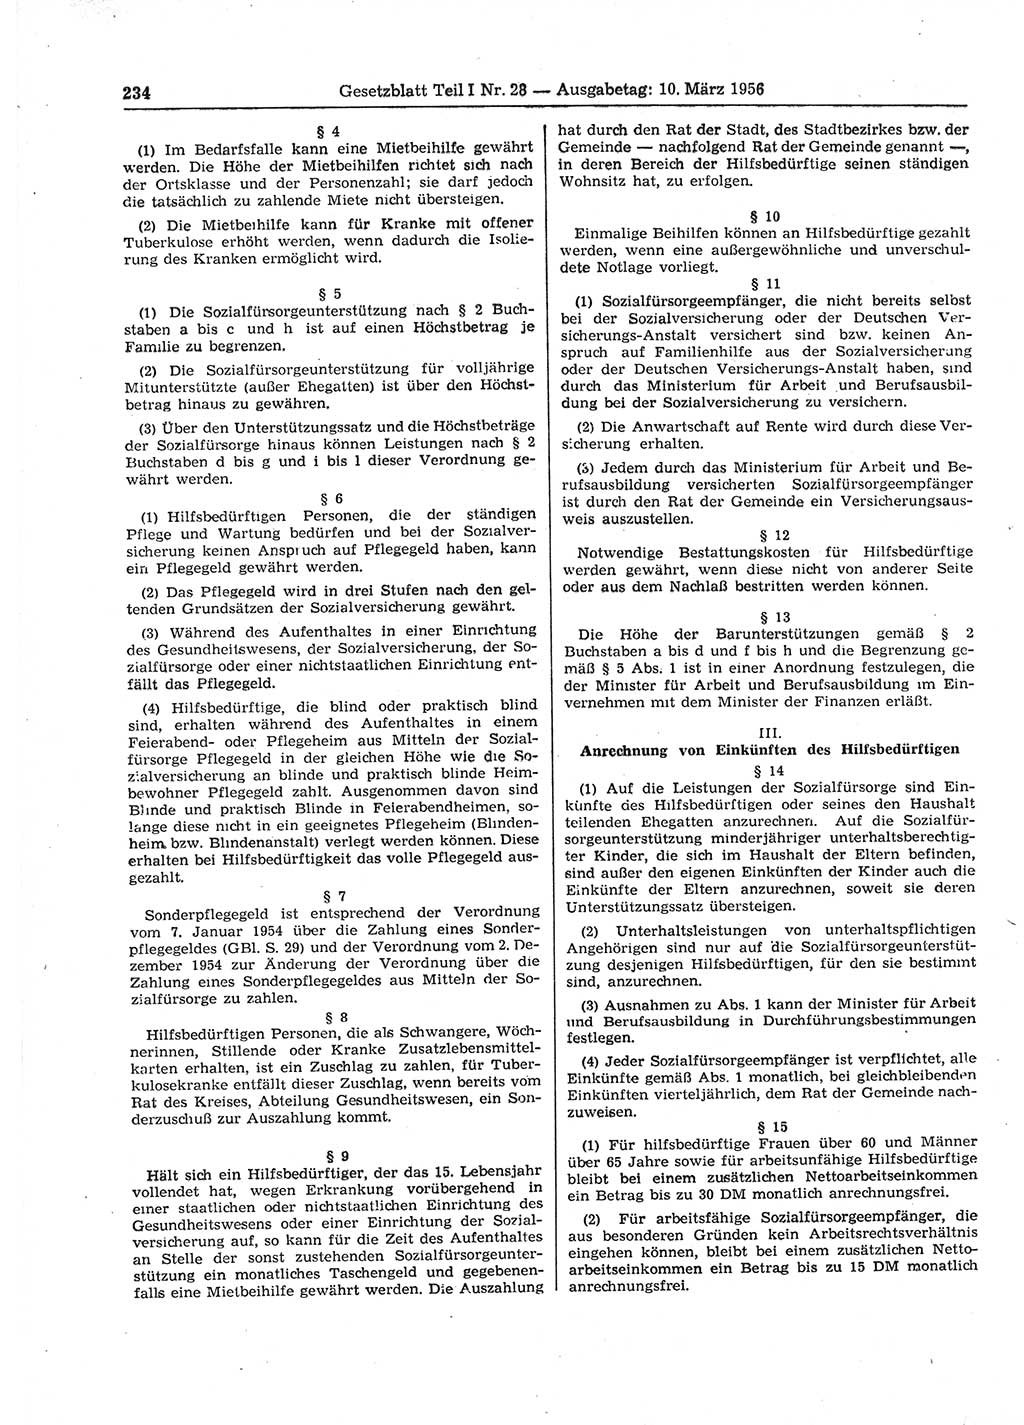 Gesetzblatt (GBl.) der Deutschen Demokratischen Republik (DDR) Teil Ⅰ 1956, Seite 234 (GBl. DDR Ⅰ 1956, S. 234)